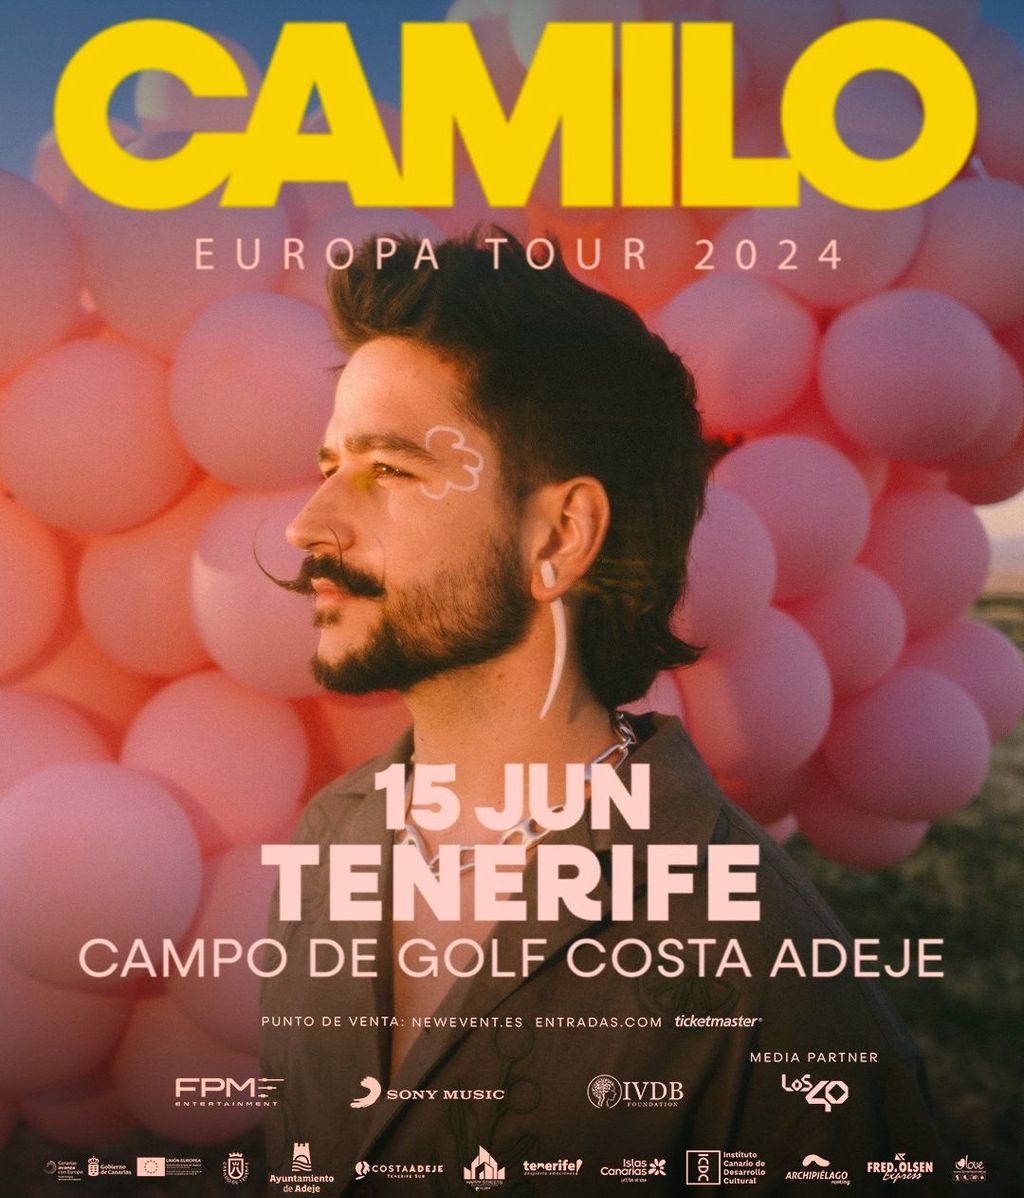 Cartel del concierto de Camilo en Tenerife